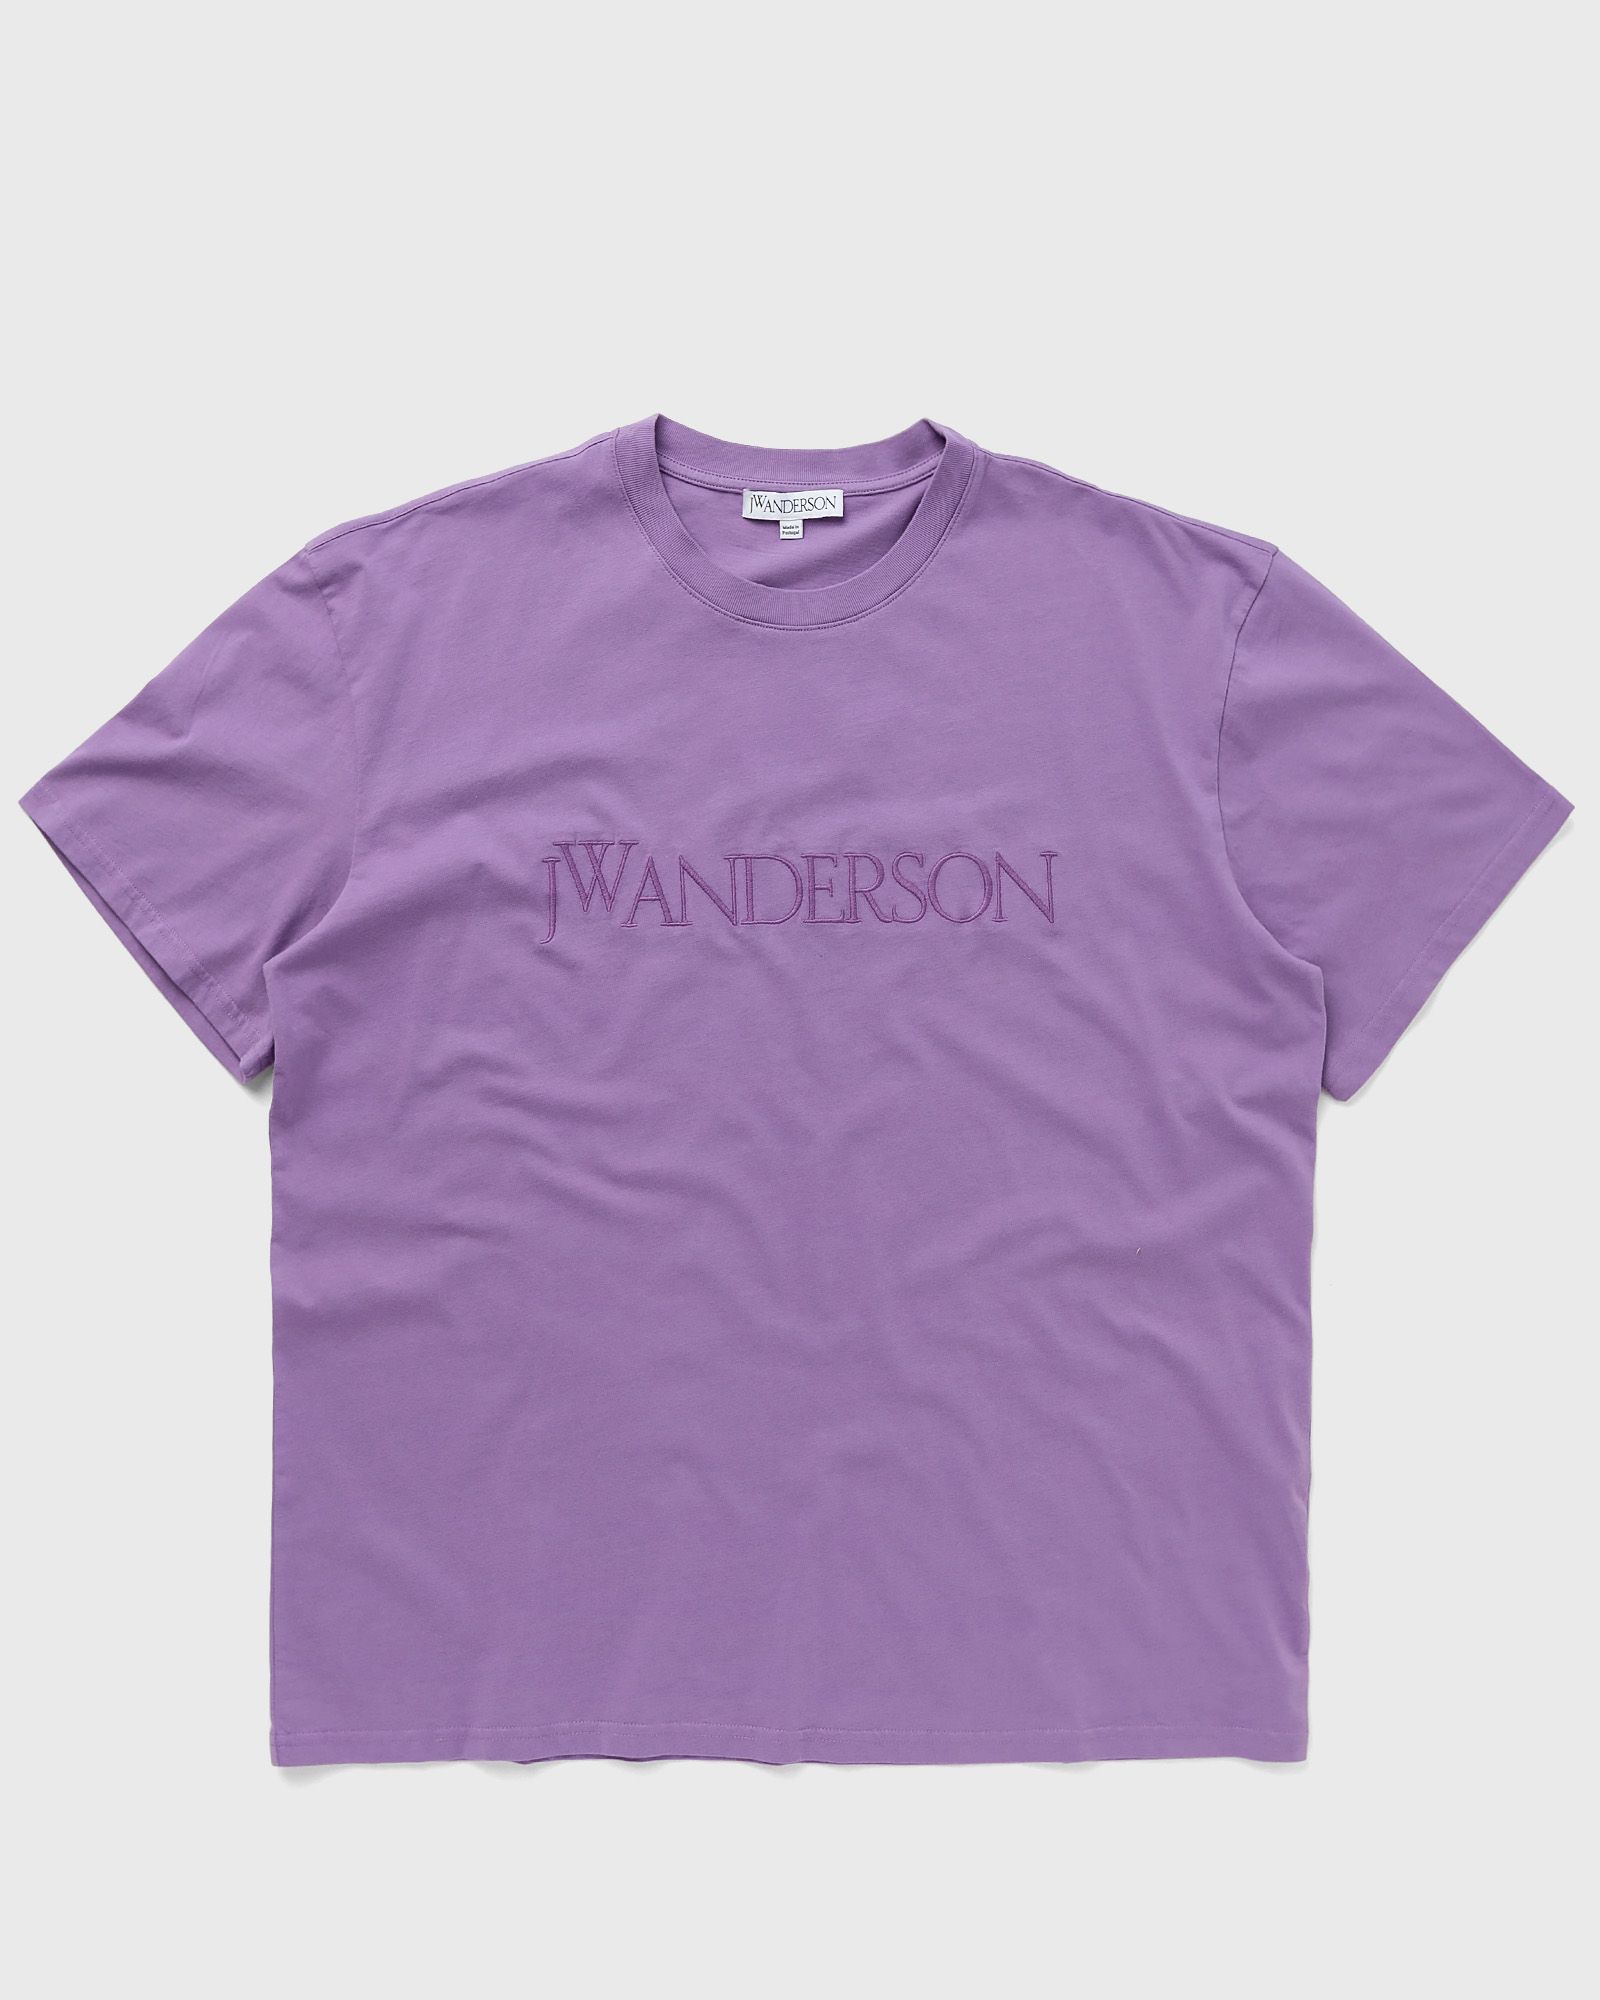 JW Anderson - logo embroidery t-shirt men shortsleeves purple in größe:l